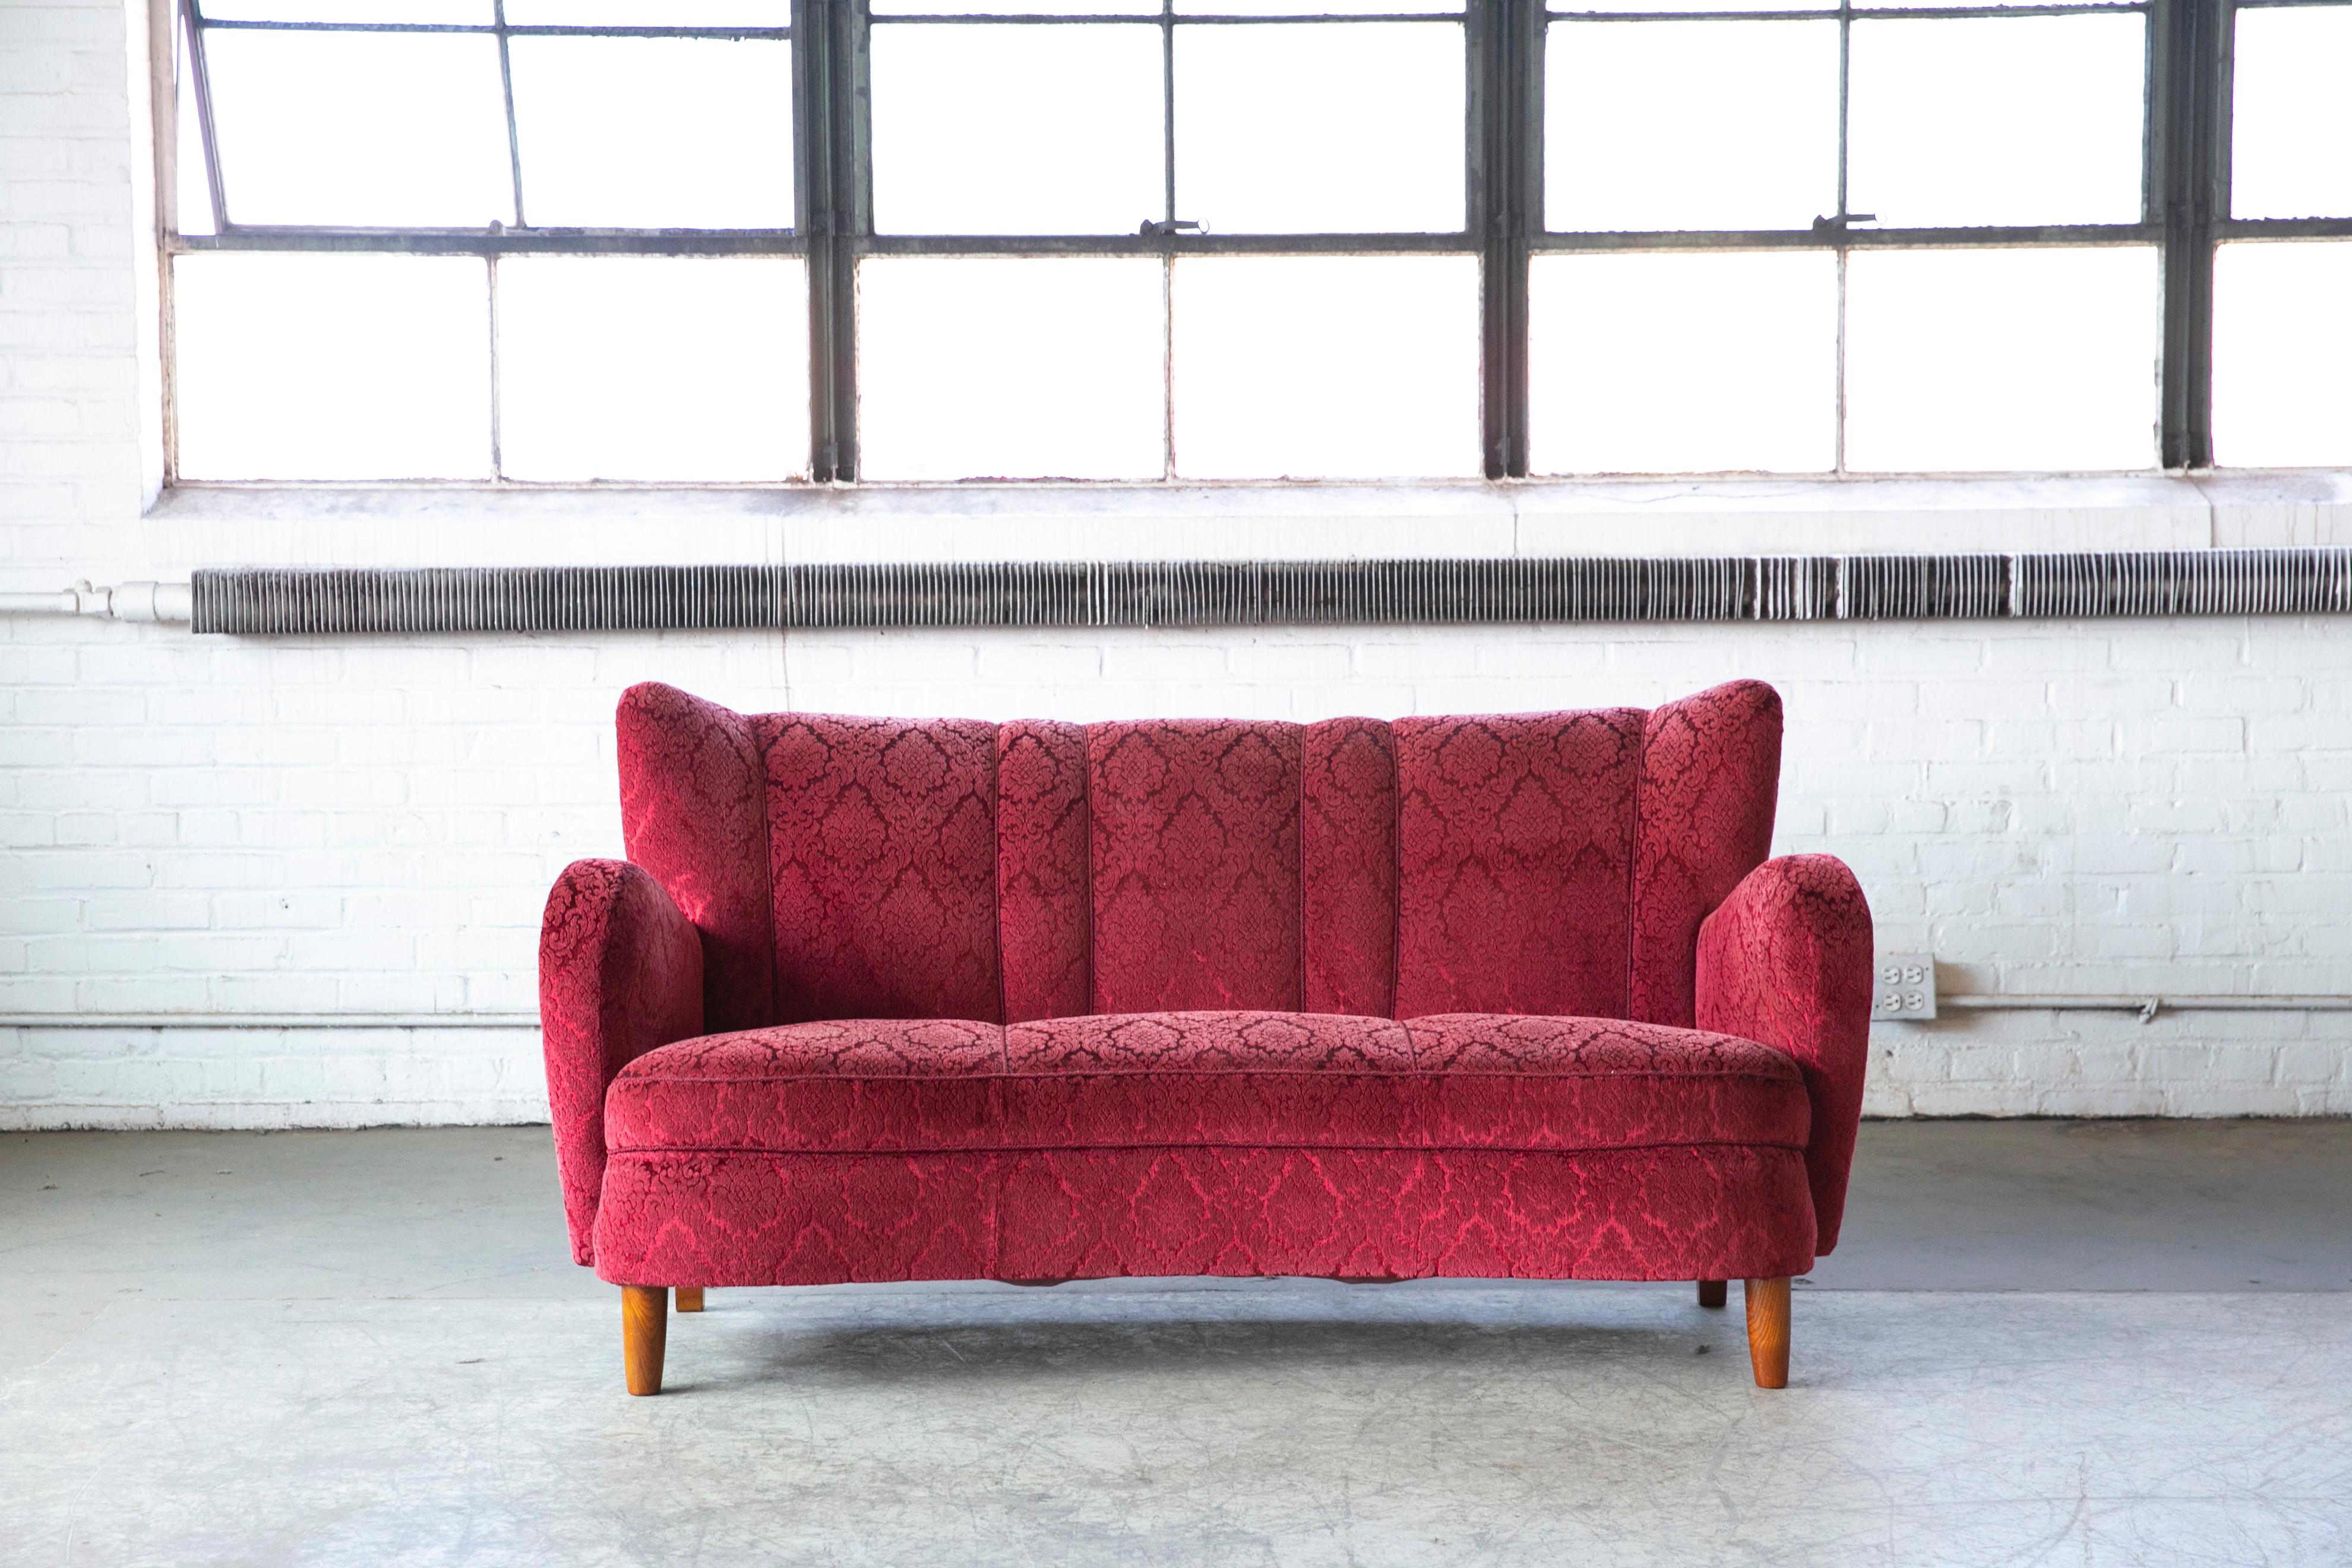 Schönes und sehr elegantes geschwungenes Sofa/Liegesofa aus den 1940er Jahren in rotem Mohair-Wollstoff. Das Sofa hat Federn im Sitz und in der Rückenlehne, die Kissen sind schön fest und das Sofa ist sehr stabil. Der Mohair-Stoff ist in einem sehr